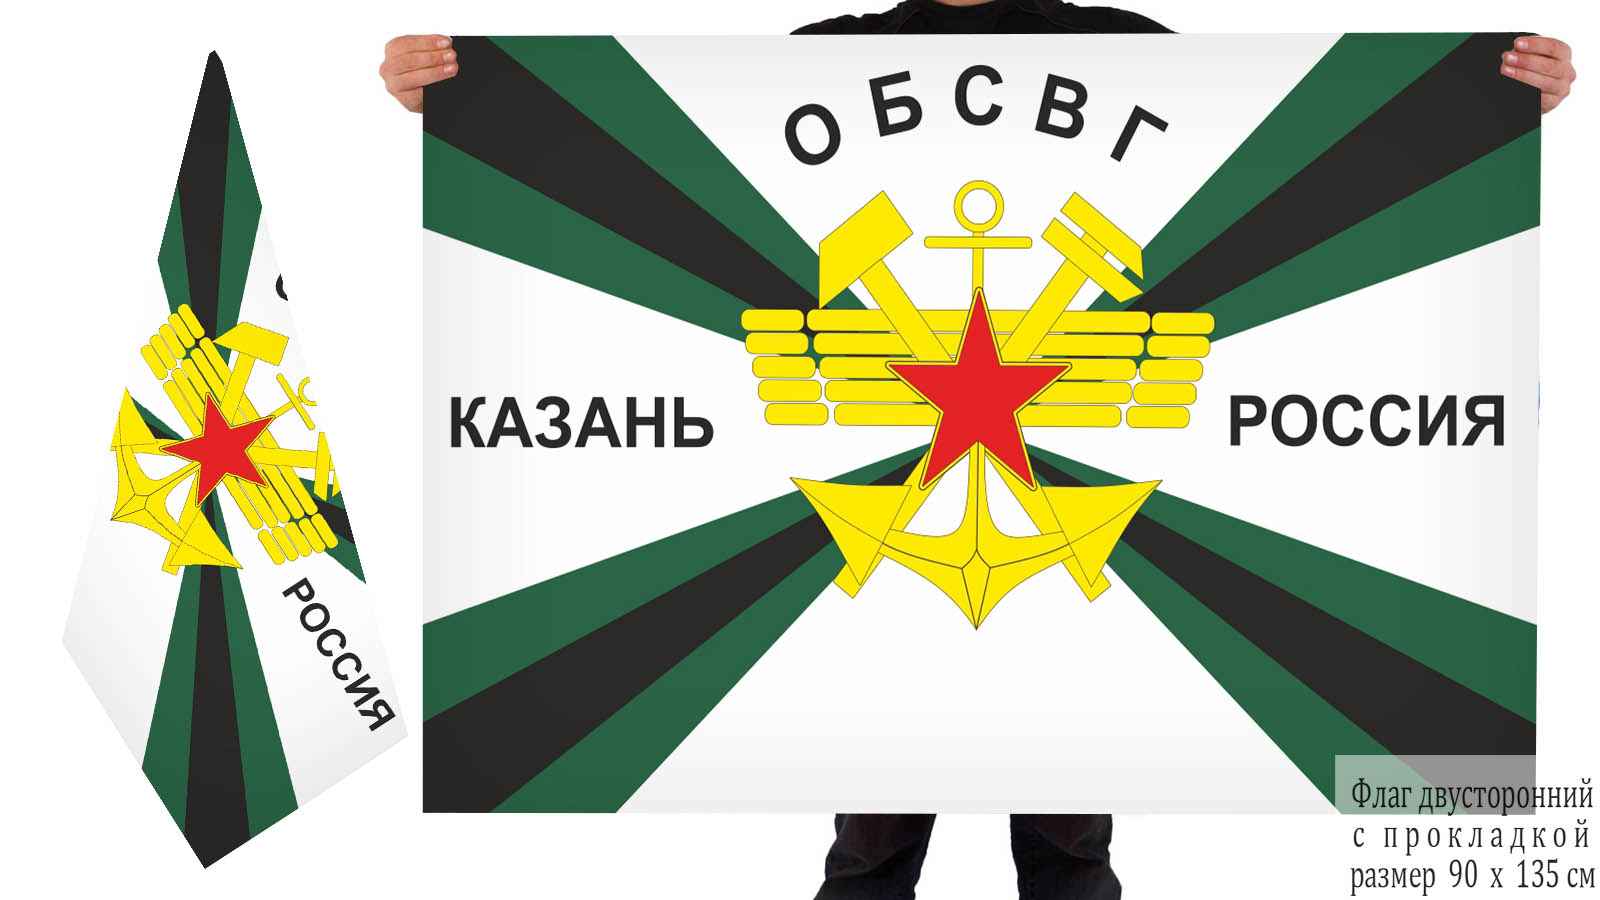 Купить в интернет магазине двухсторонний флаг ОБСВГ Казань Россия